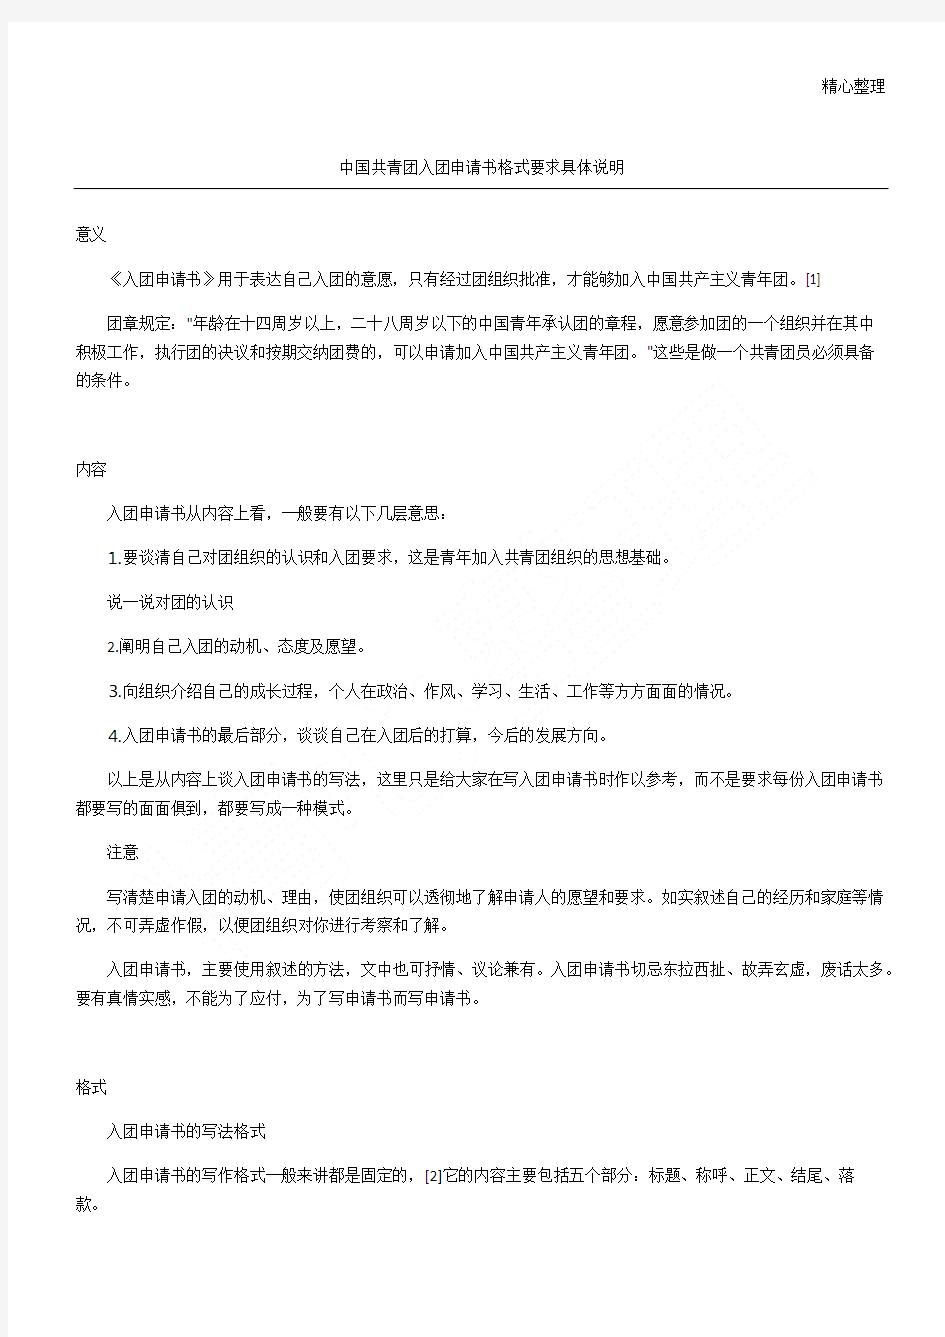 中国共青团入团申请书格式要求具体说明